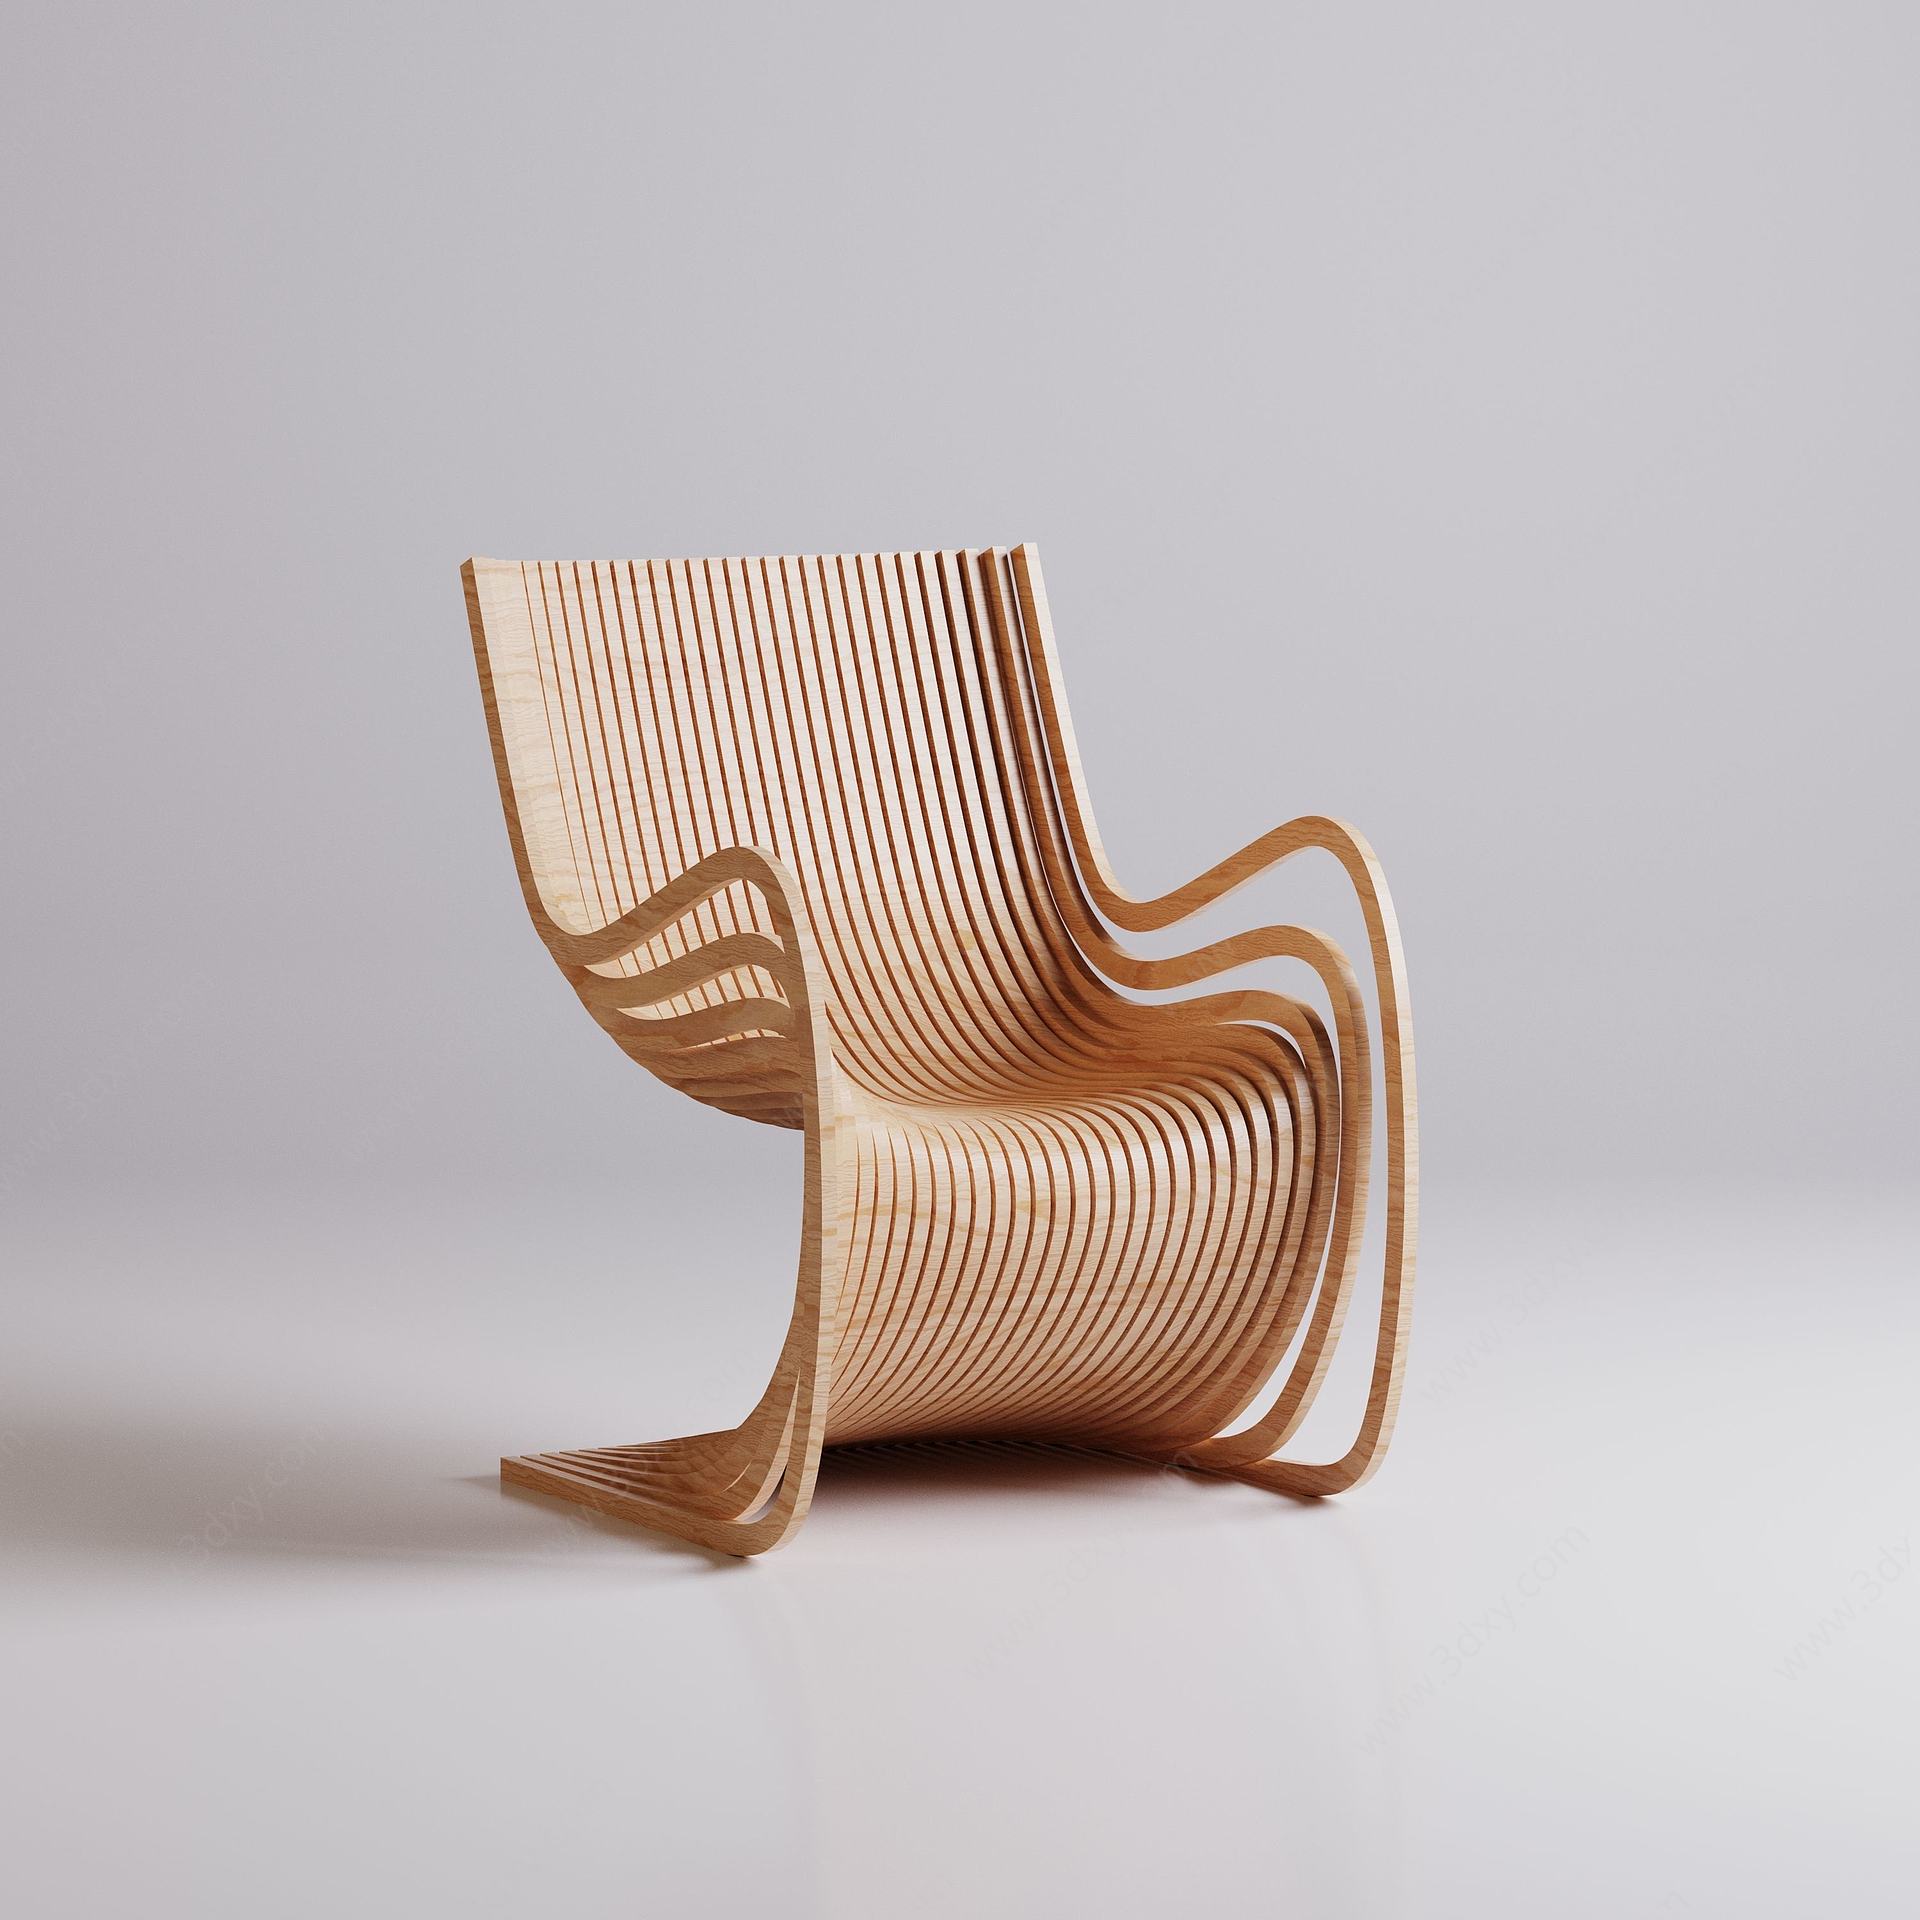 实木造型创意靠椅椅子3D模型